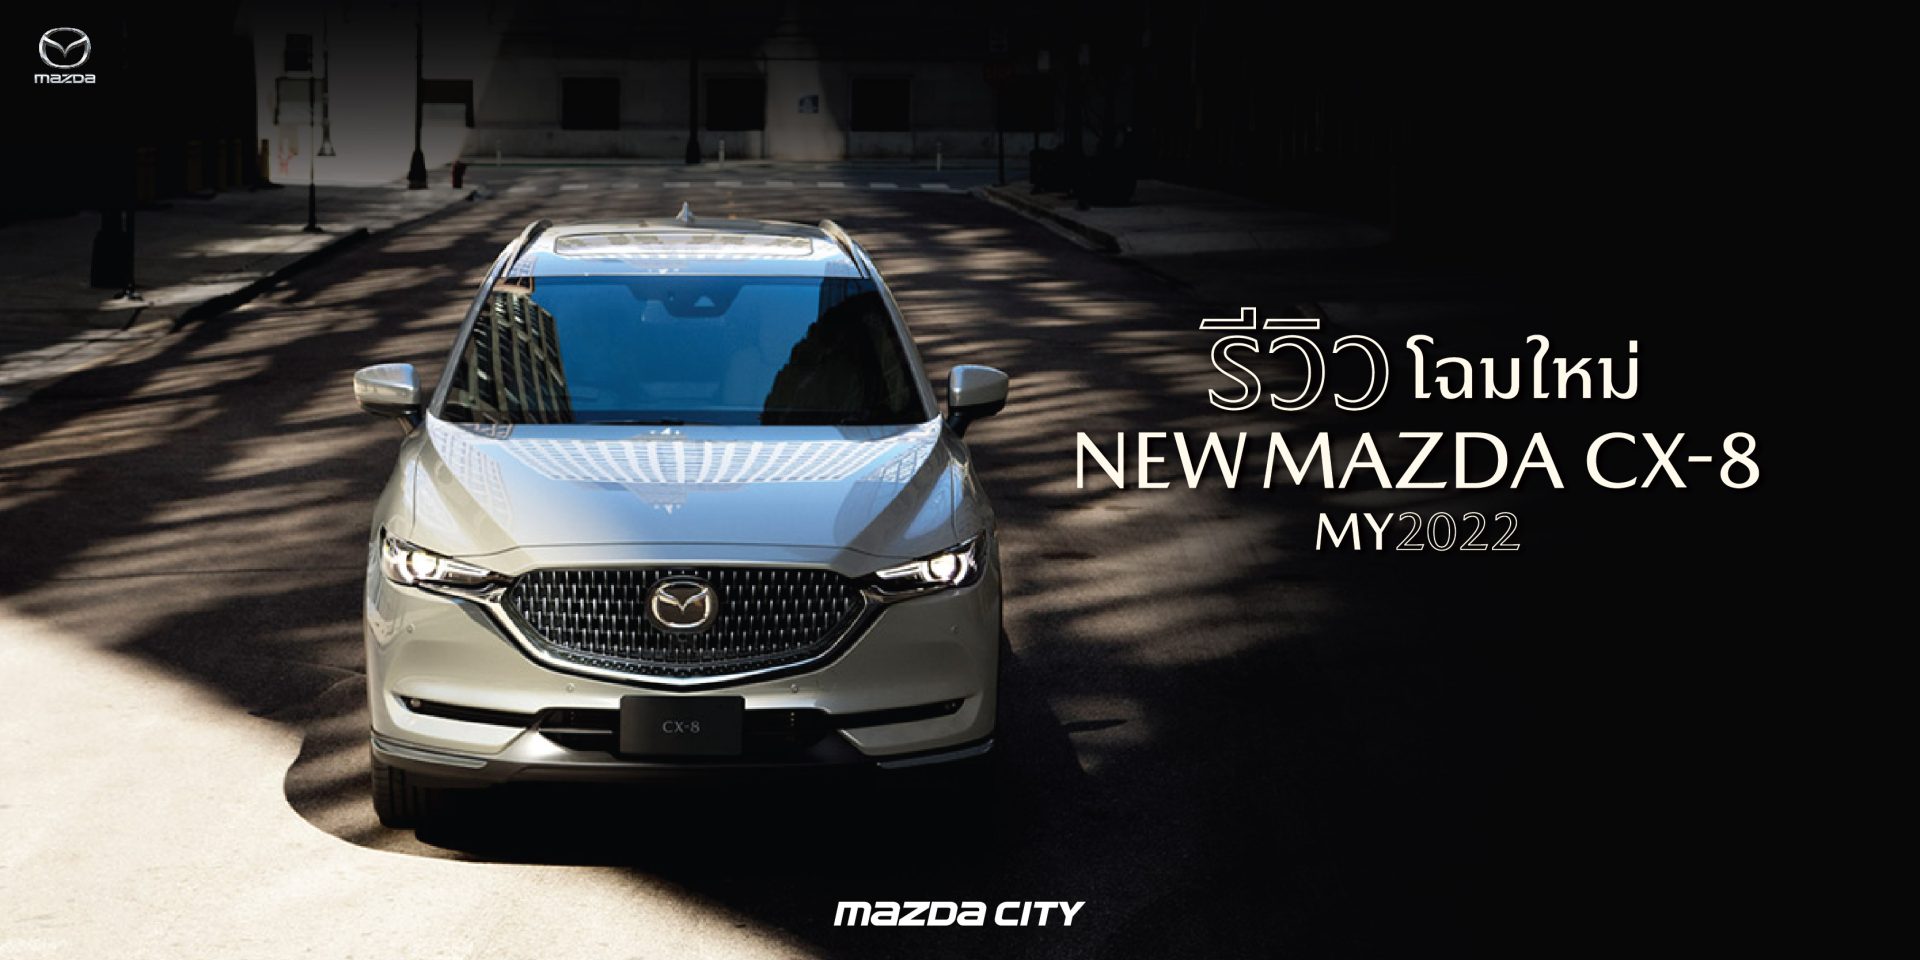 รีวิว NEW MAZDA CX-8 2022 - Mazda City